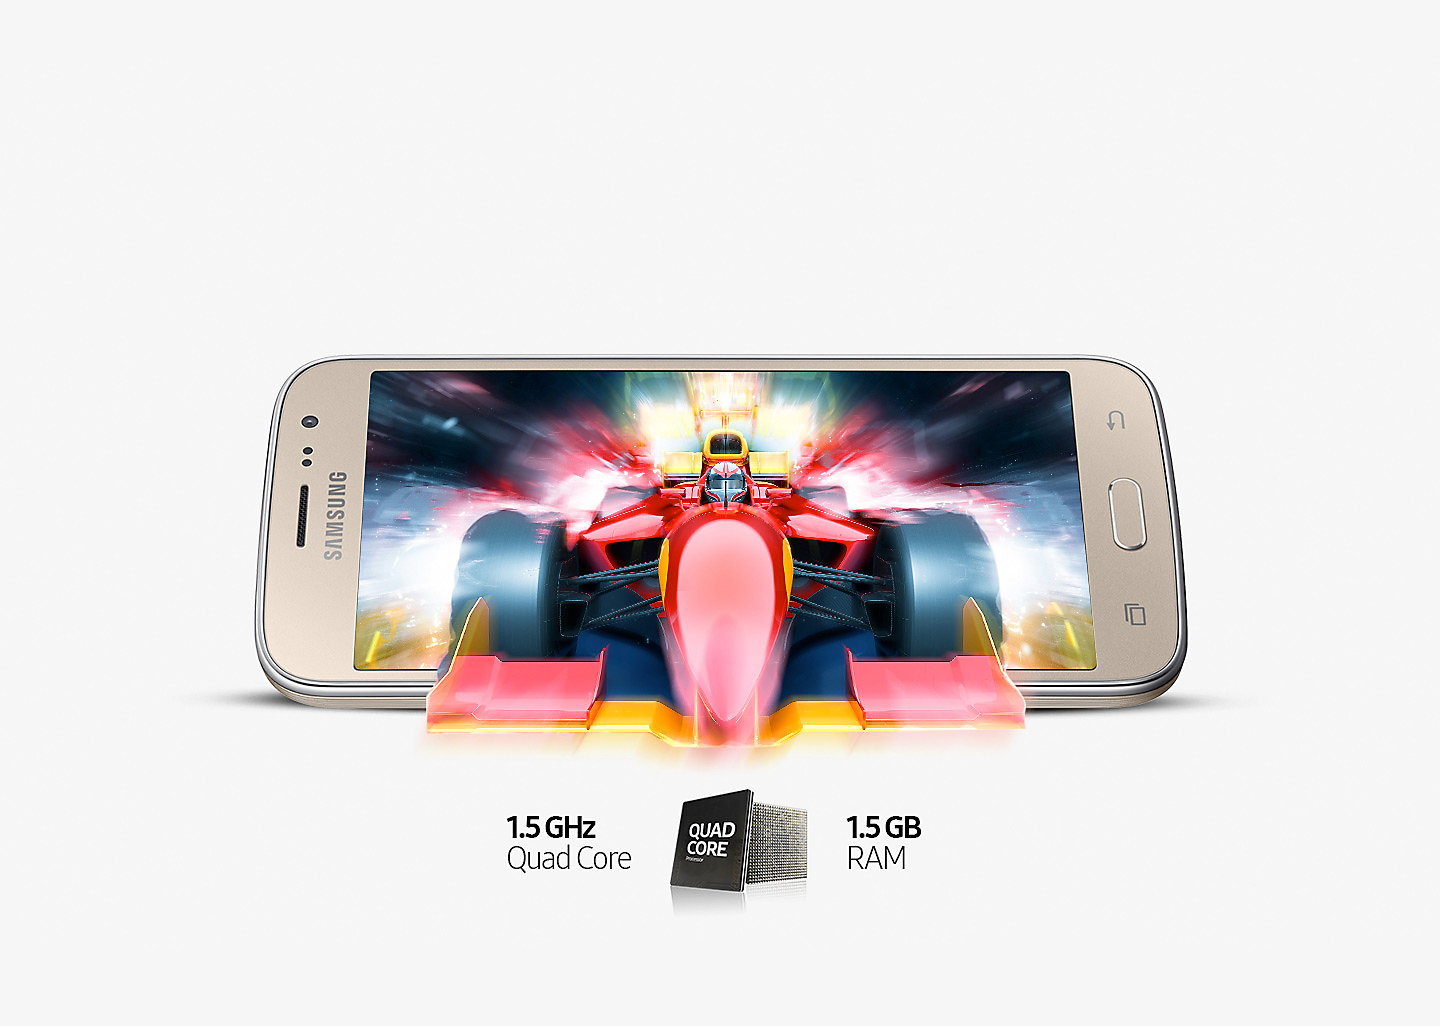 [image] Samsung Galaxy J2 Price Kenya